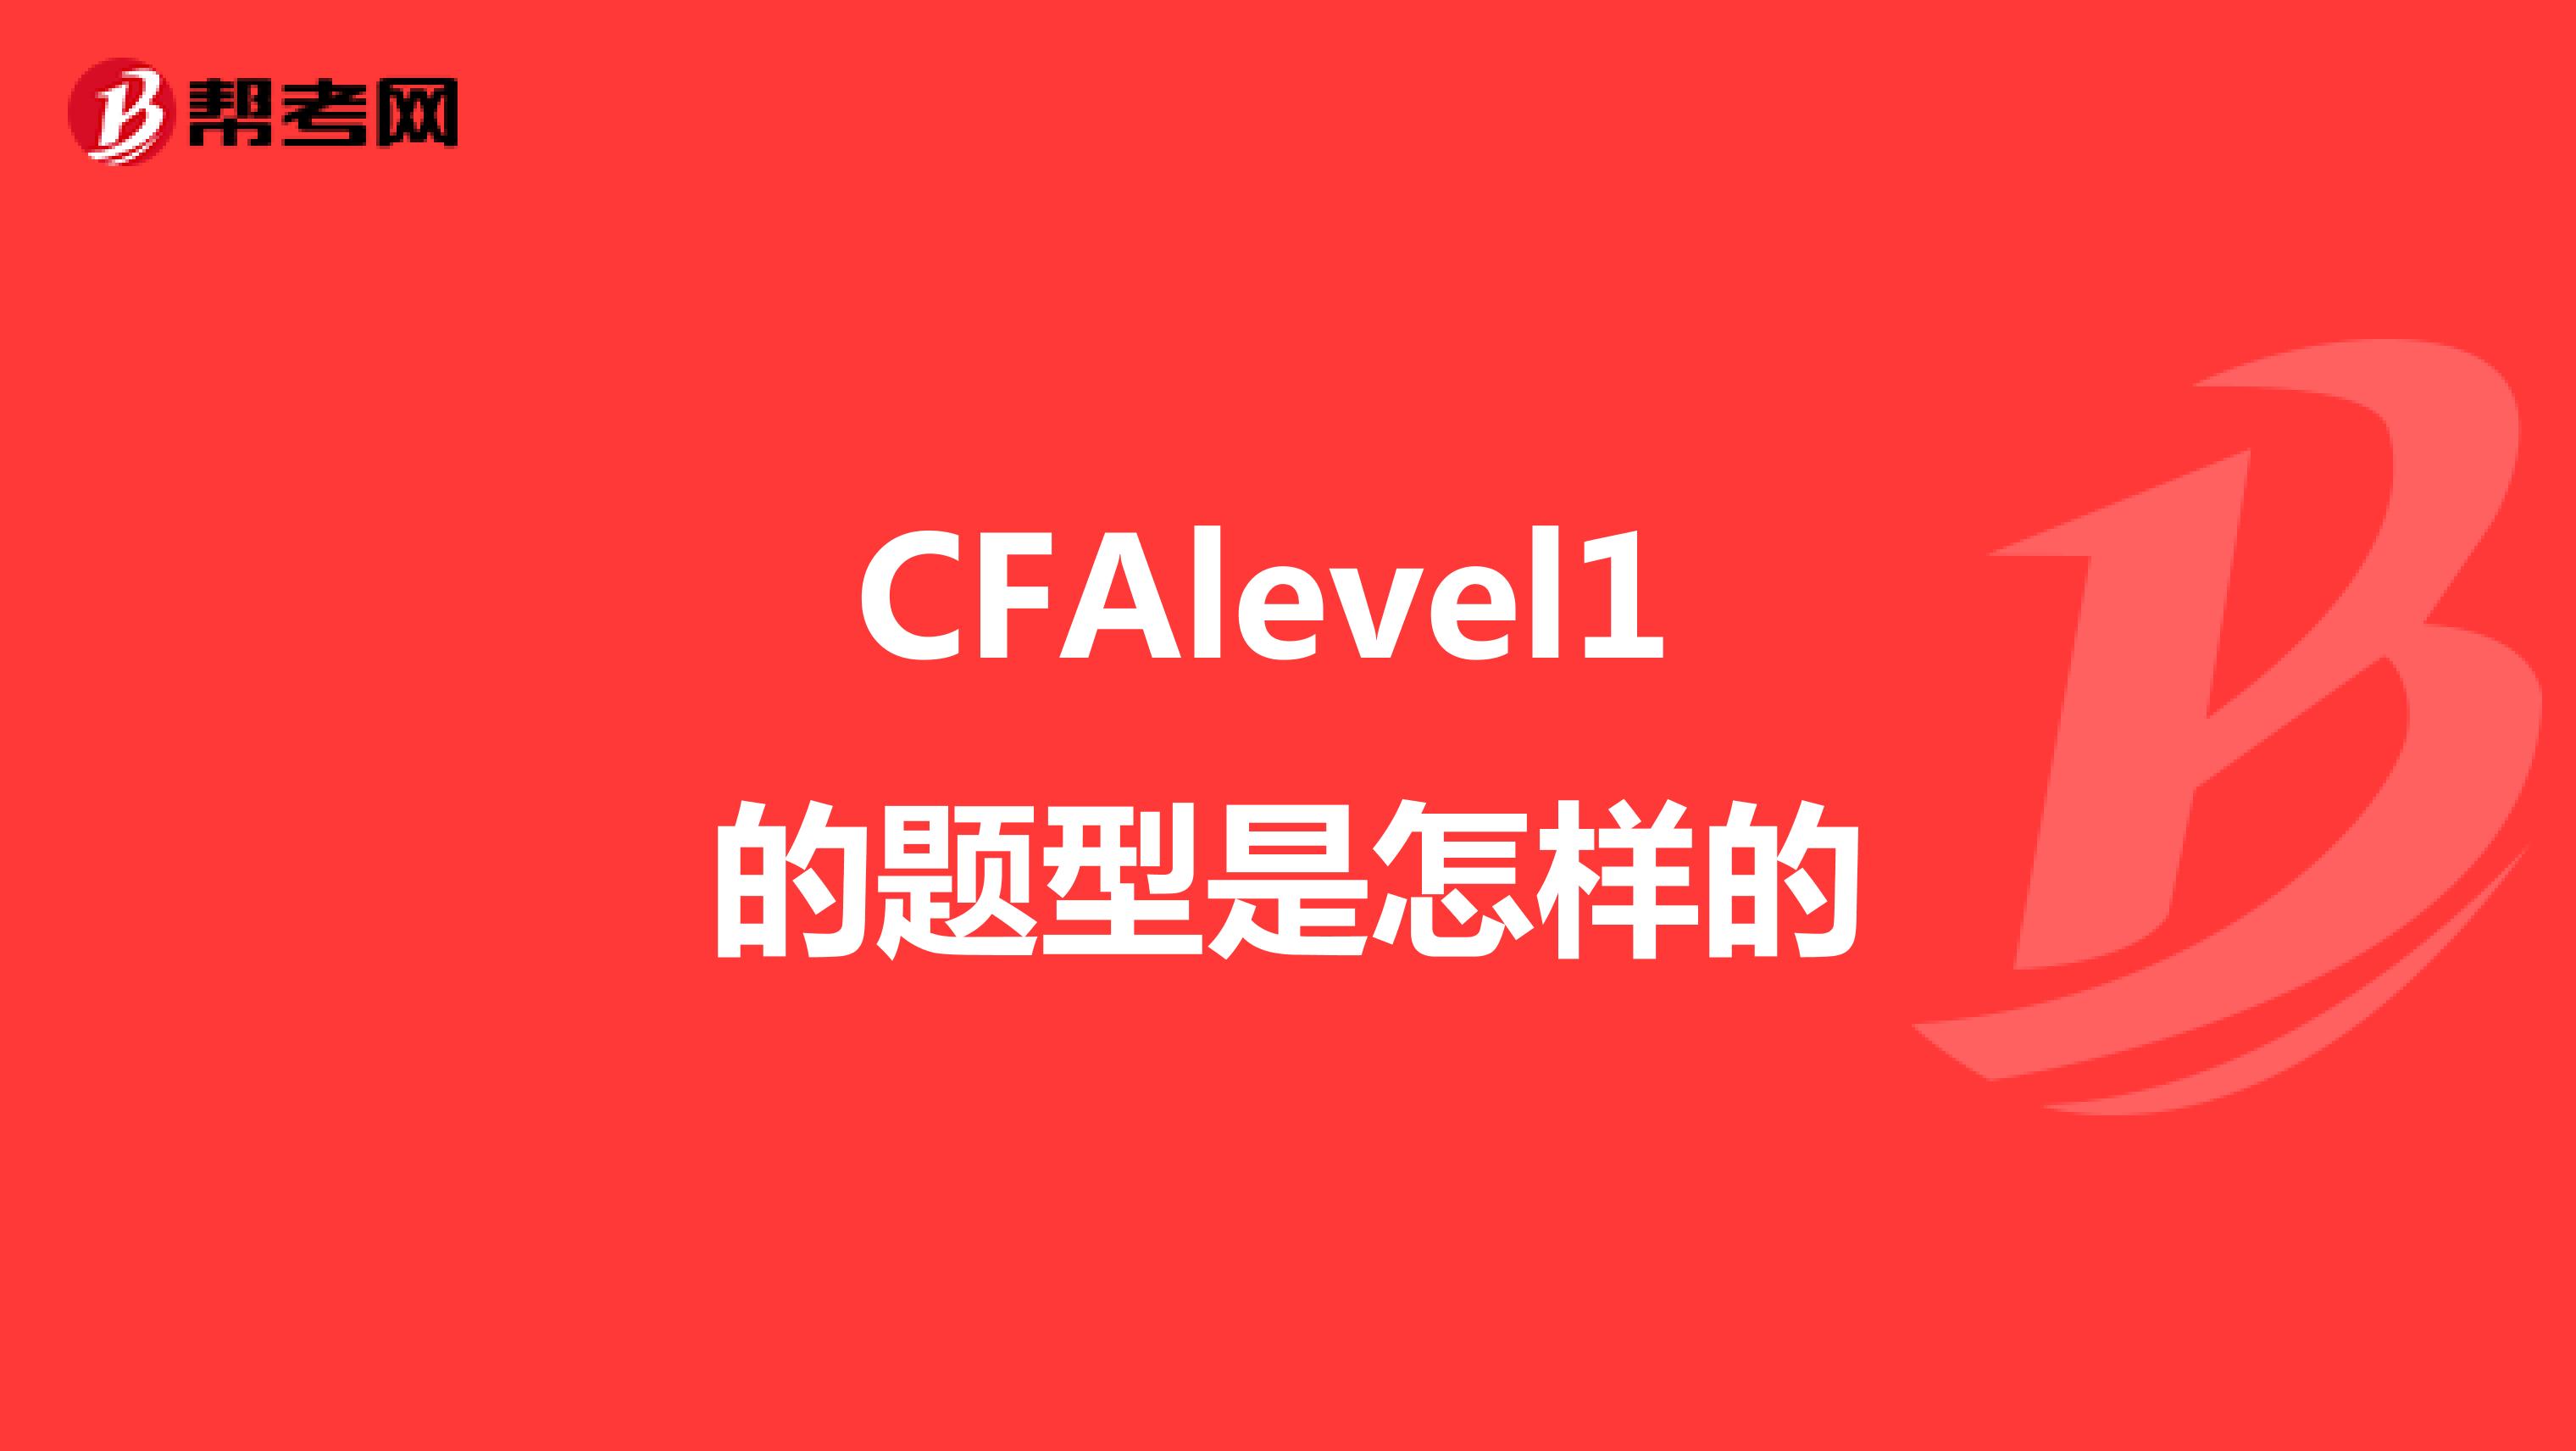 CFAlevel1 的题型是怎样的